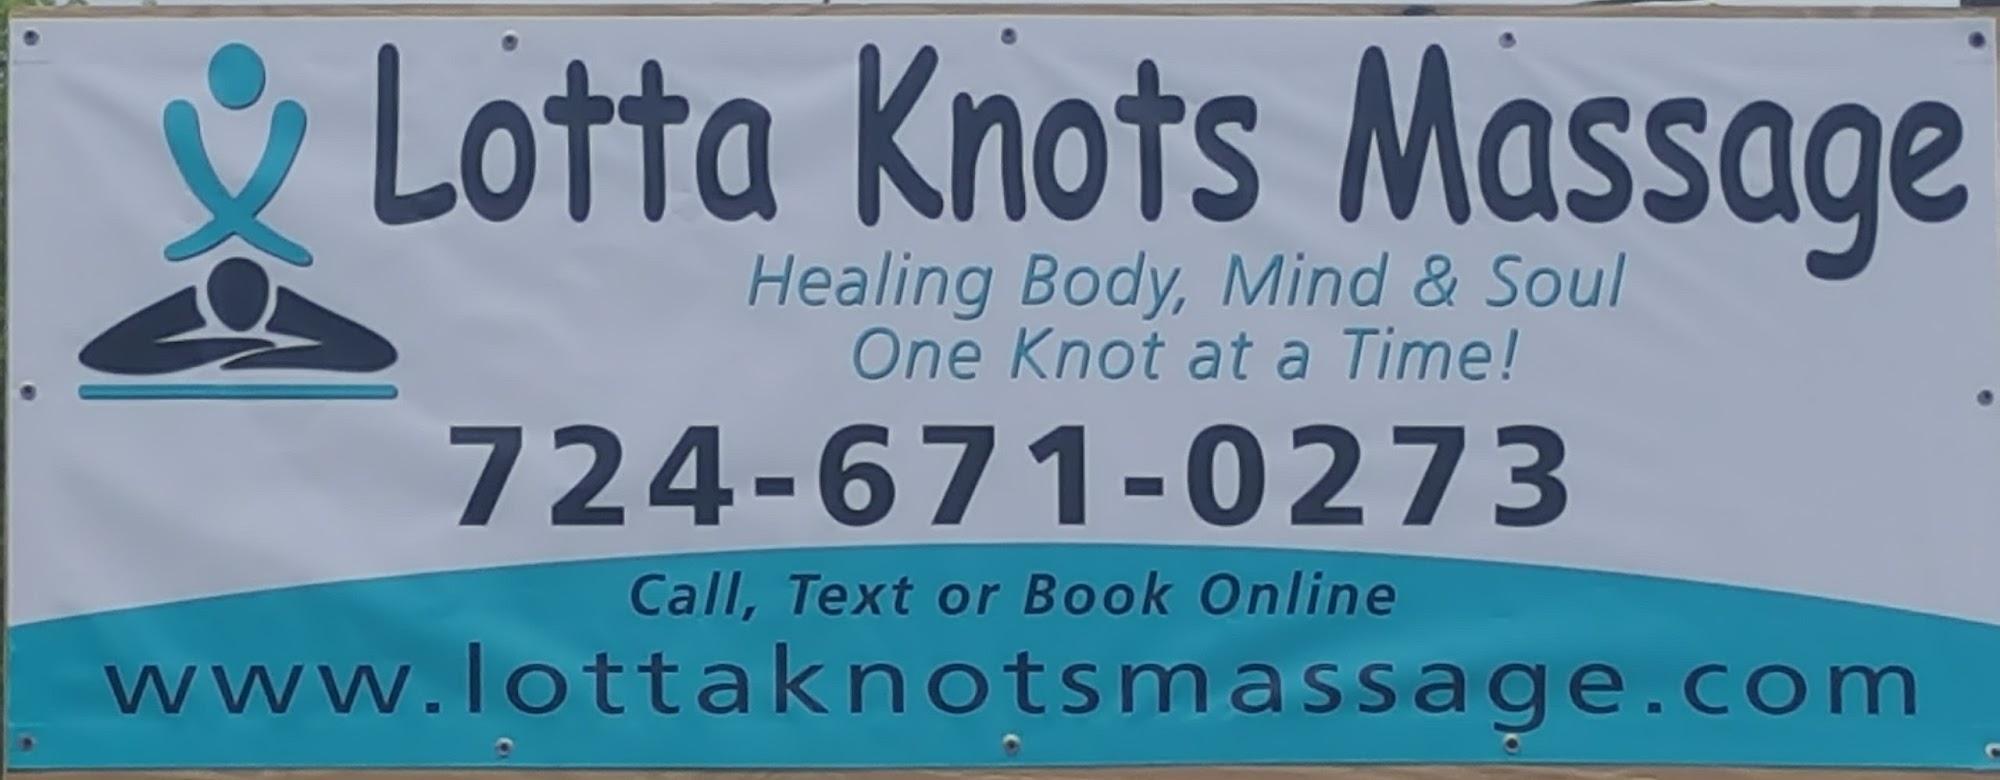 Lotta Knots Massage